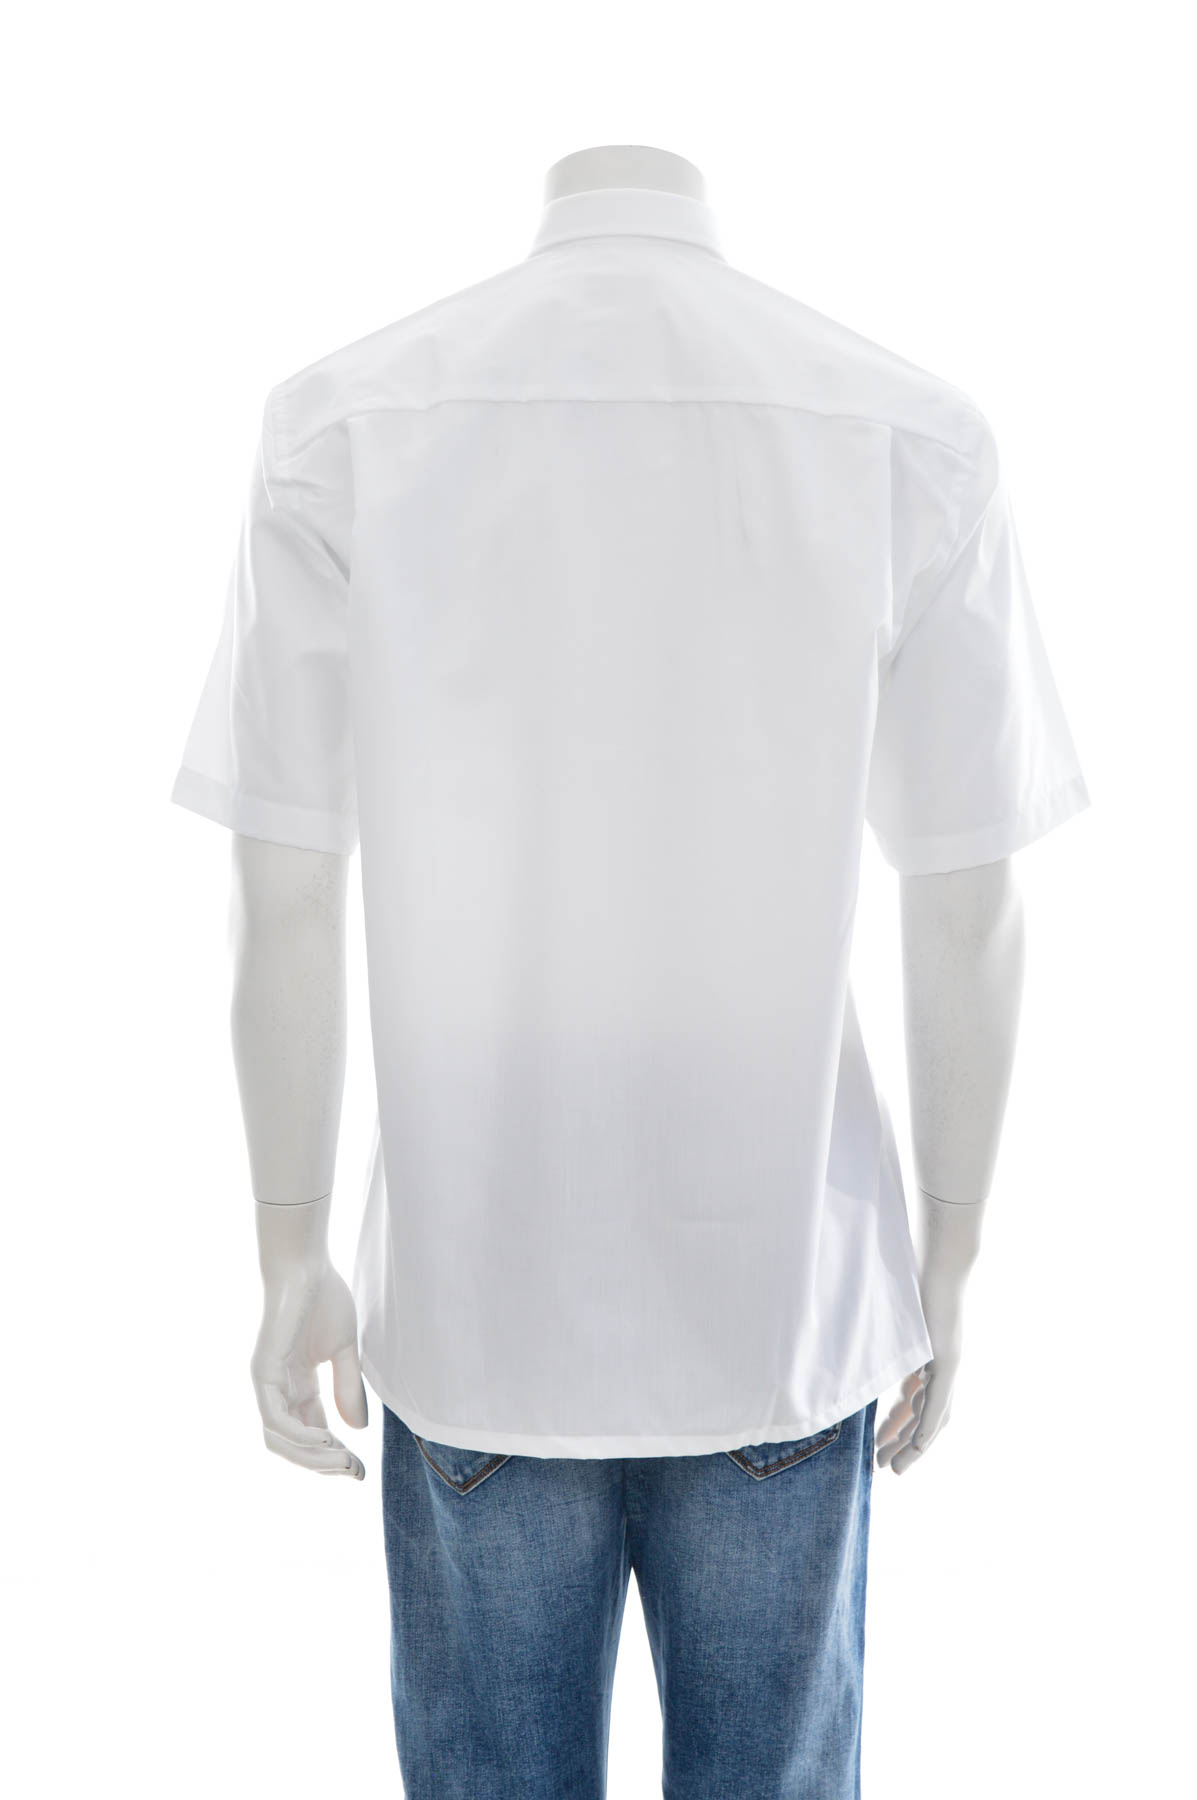 Men's shirt - GOTTFRIED SCHMIDT - 1